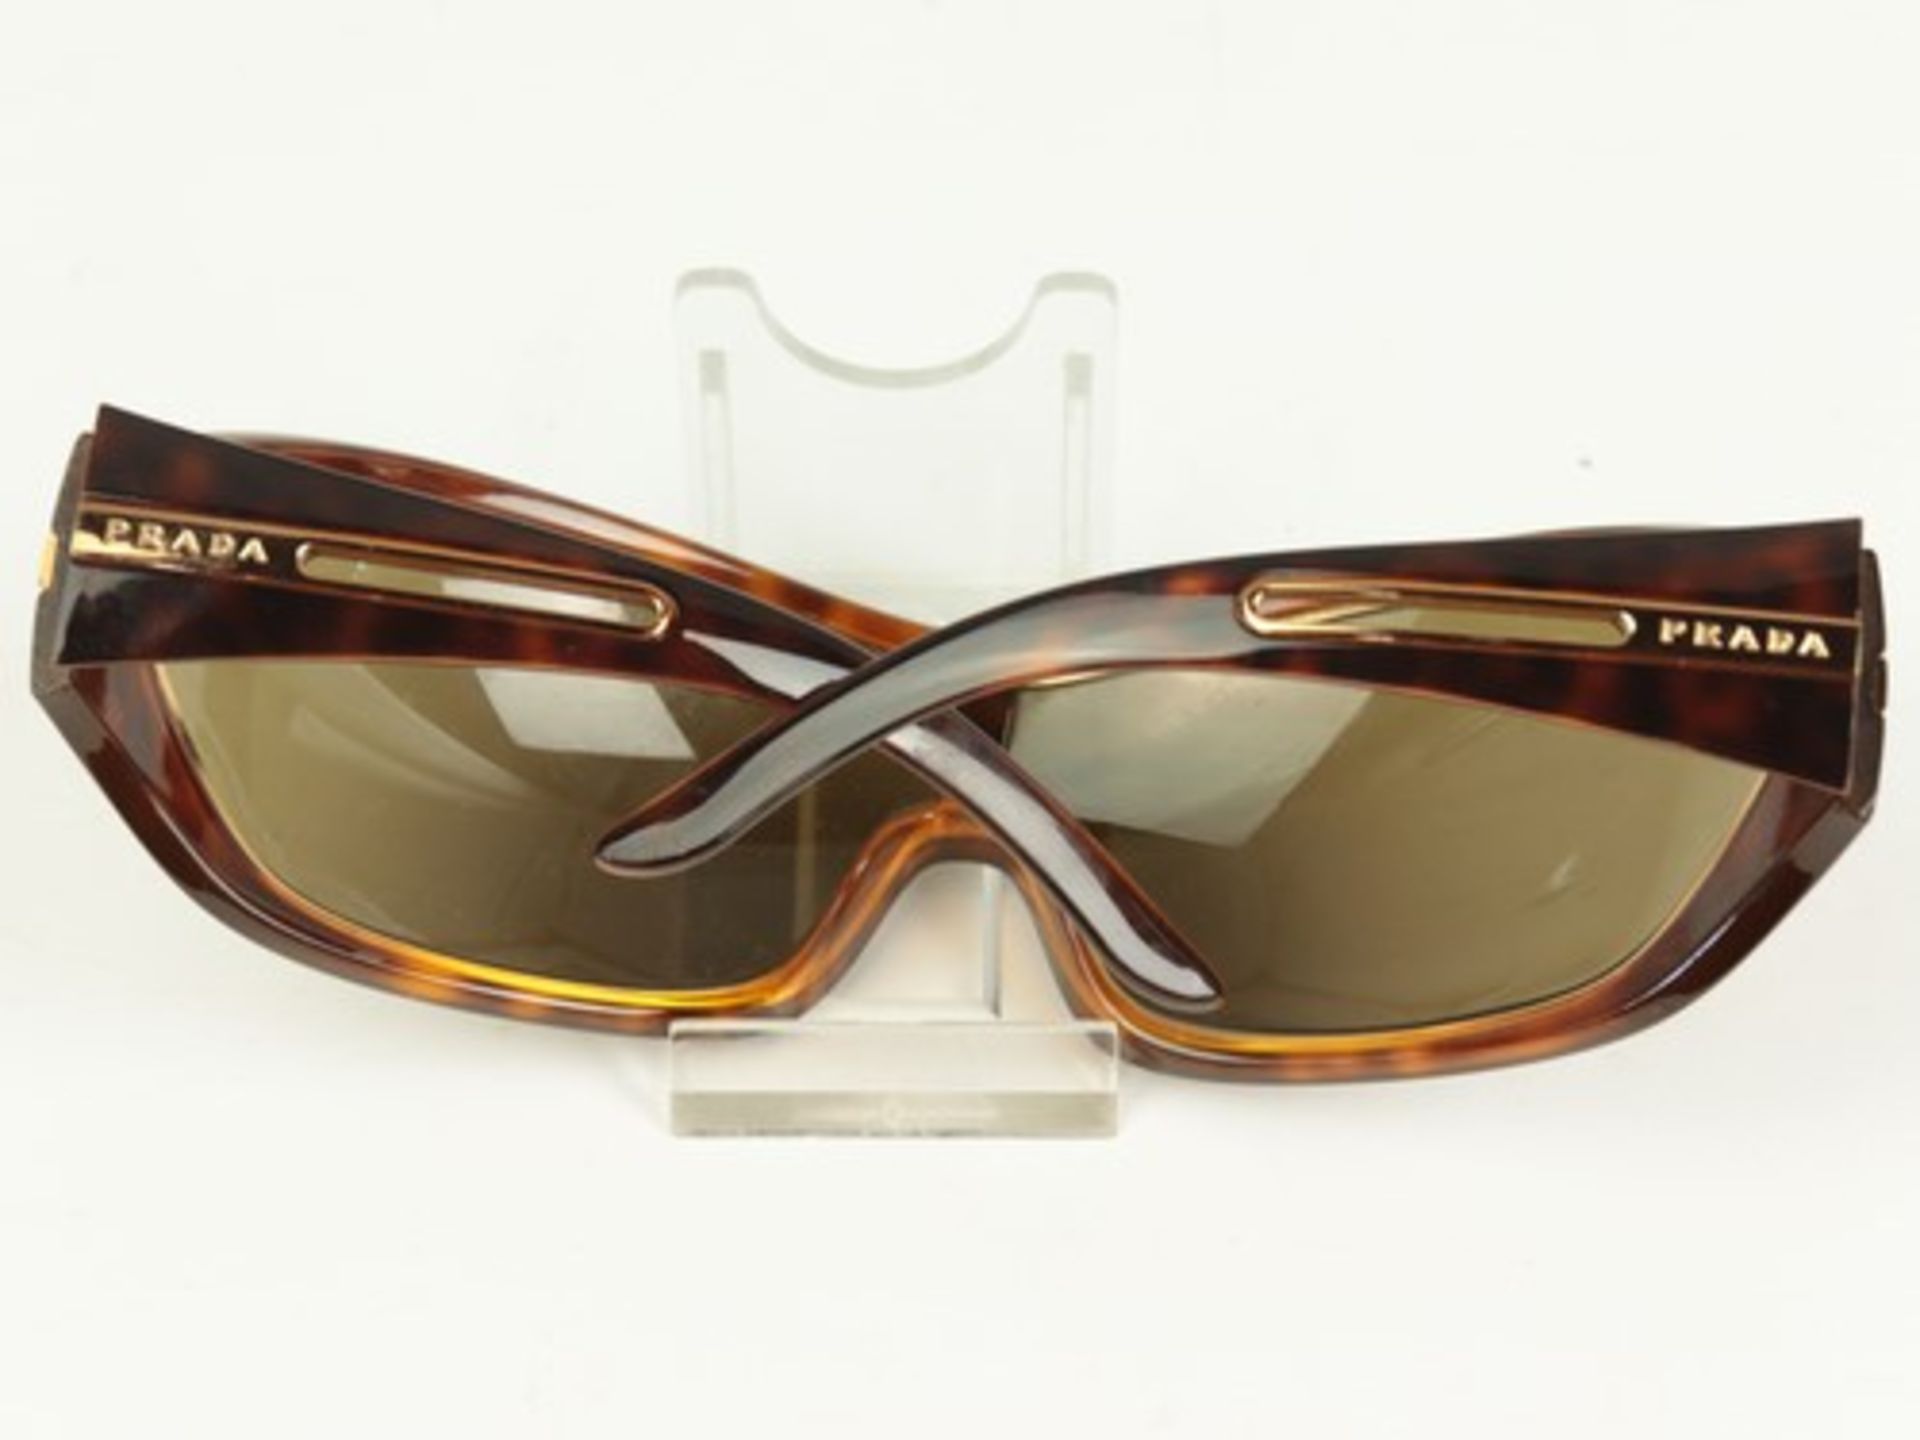 Prada - Sonnenbrilleschildpattfarbener Kunststoff, goldfarbene Zierleiste, verbundene gebogene - Bild 3 aus 5